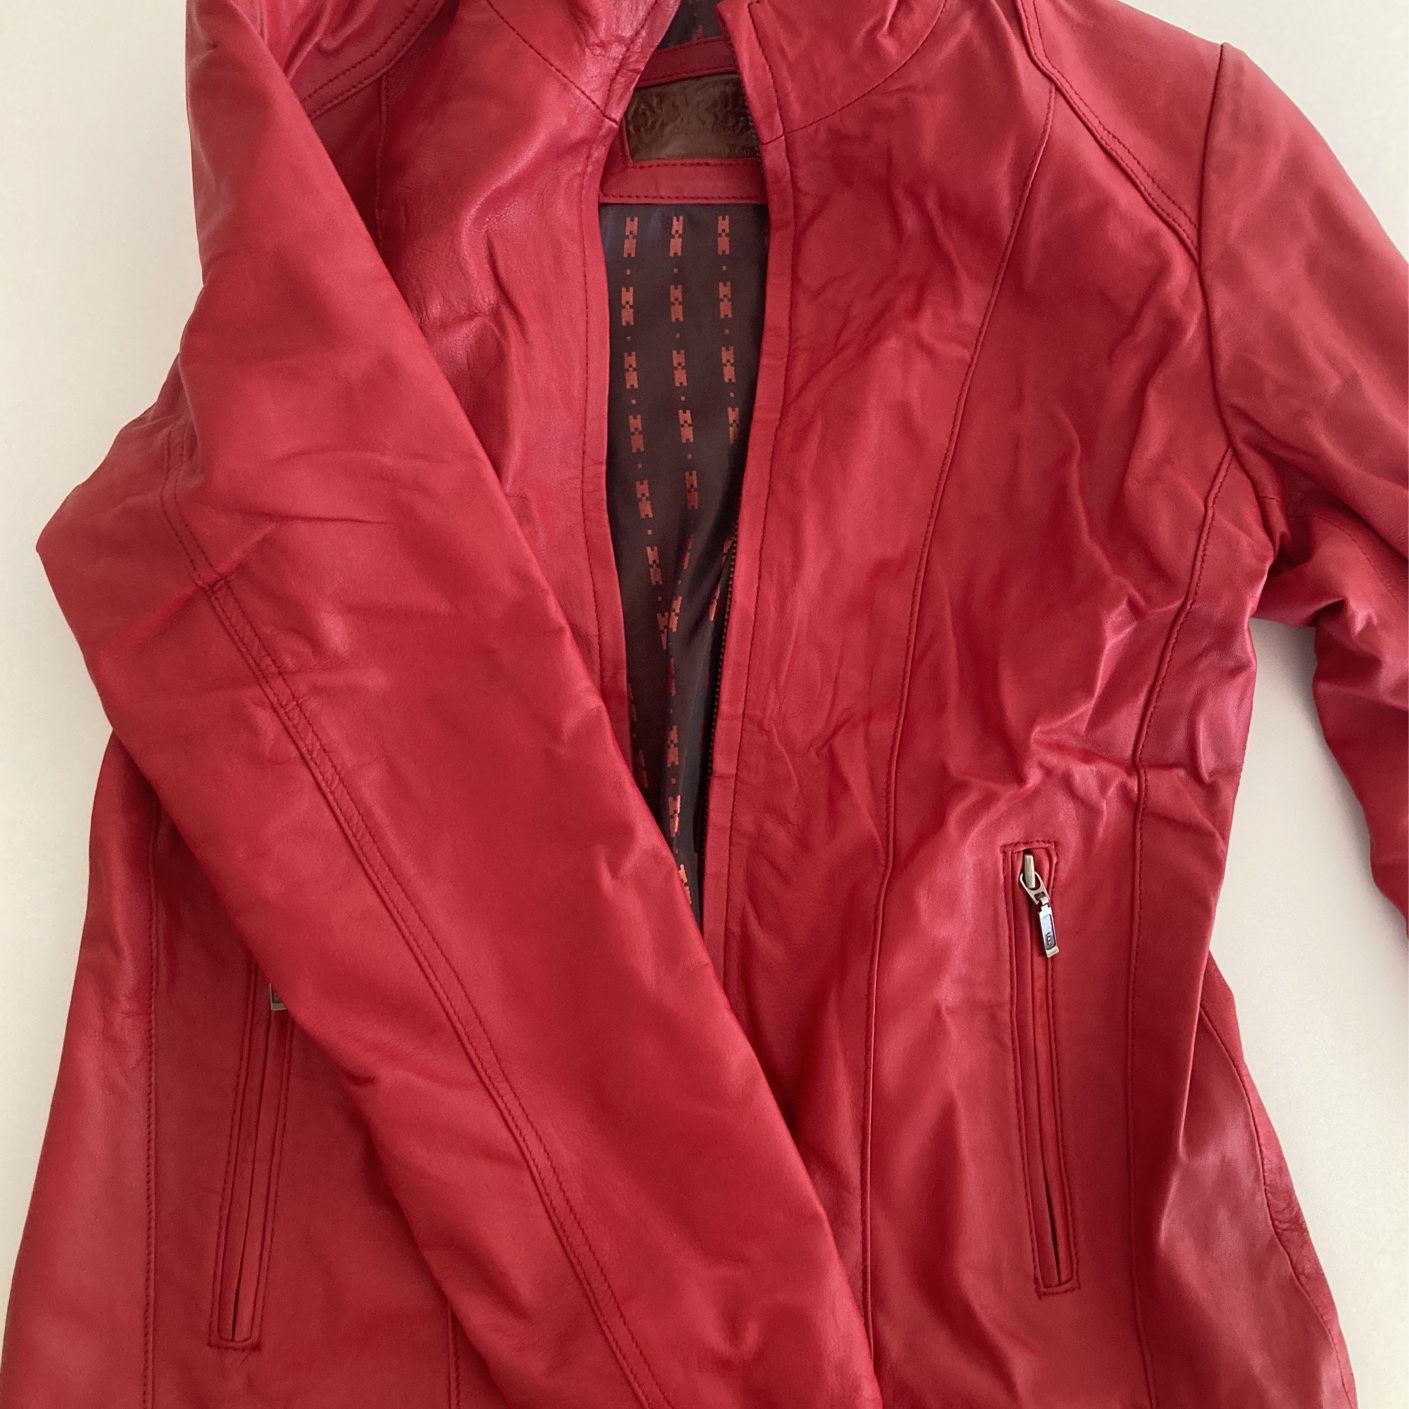 Alishbah Red Leather Jacket